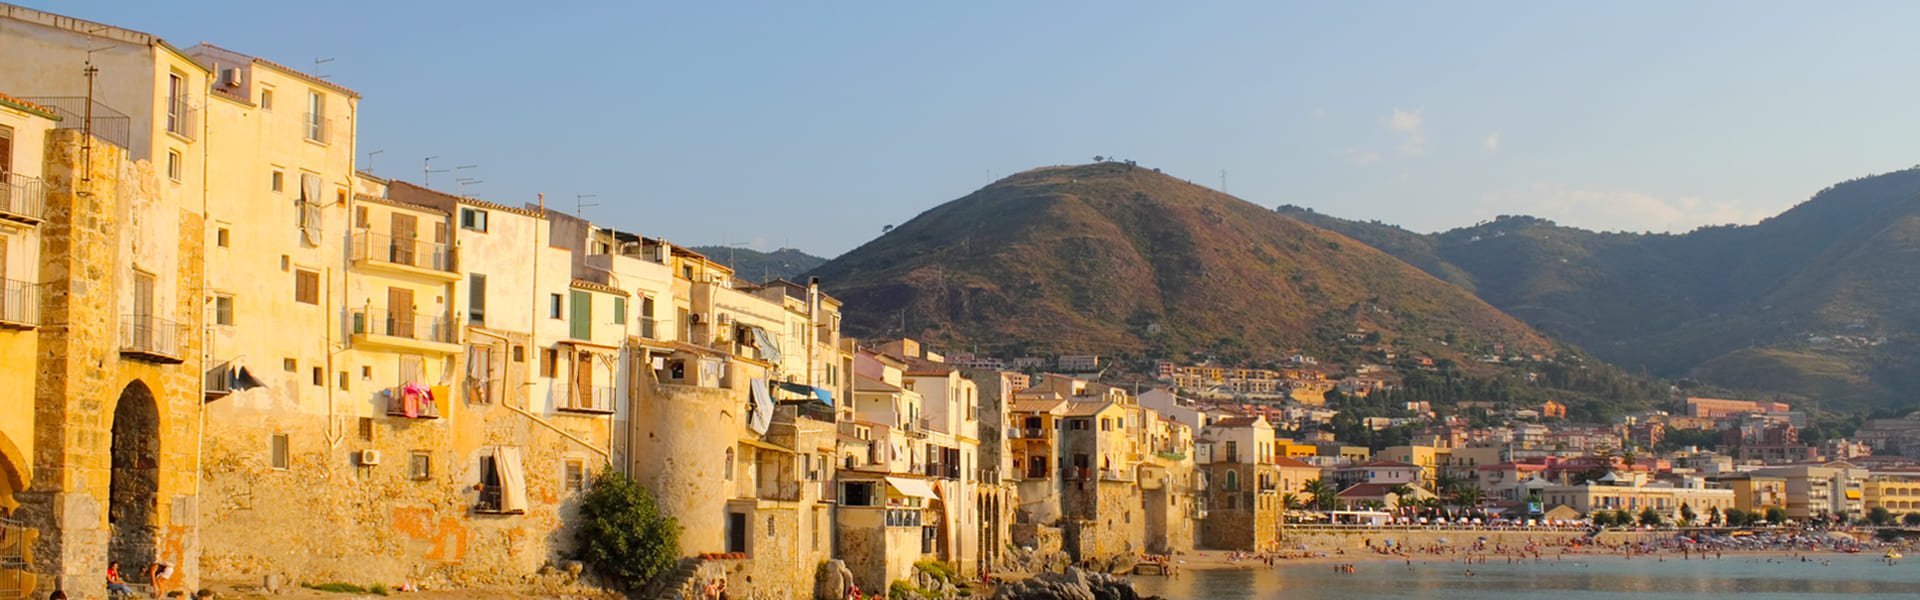 Cefalù in Sicilië, Italië